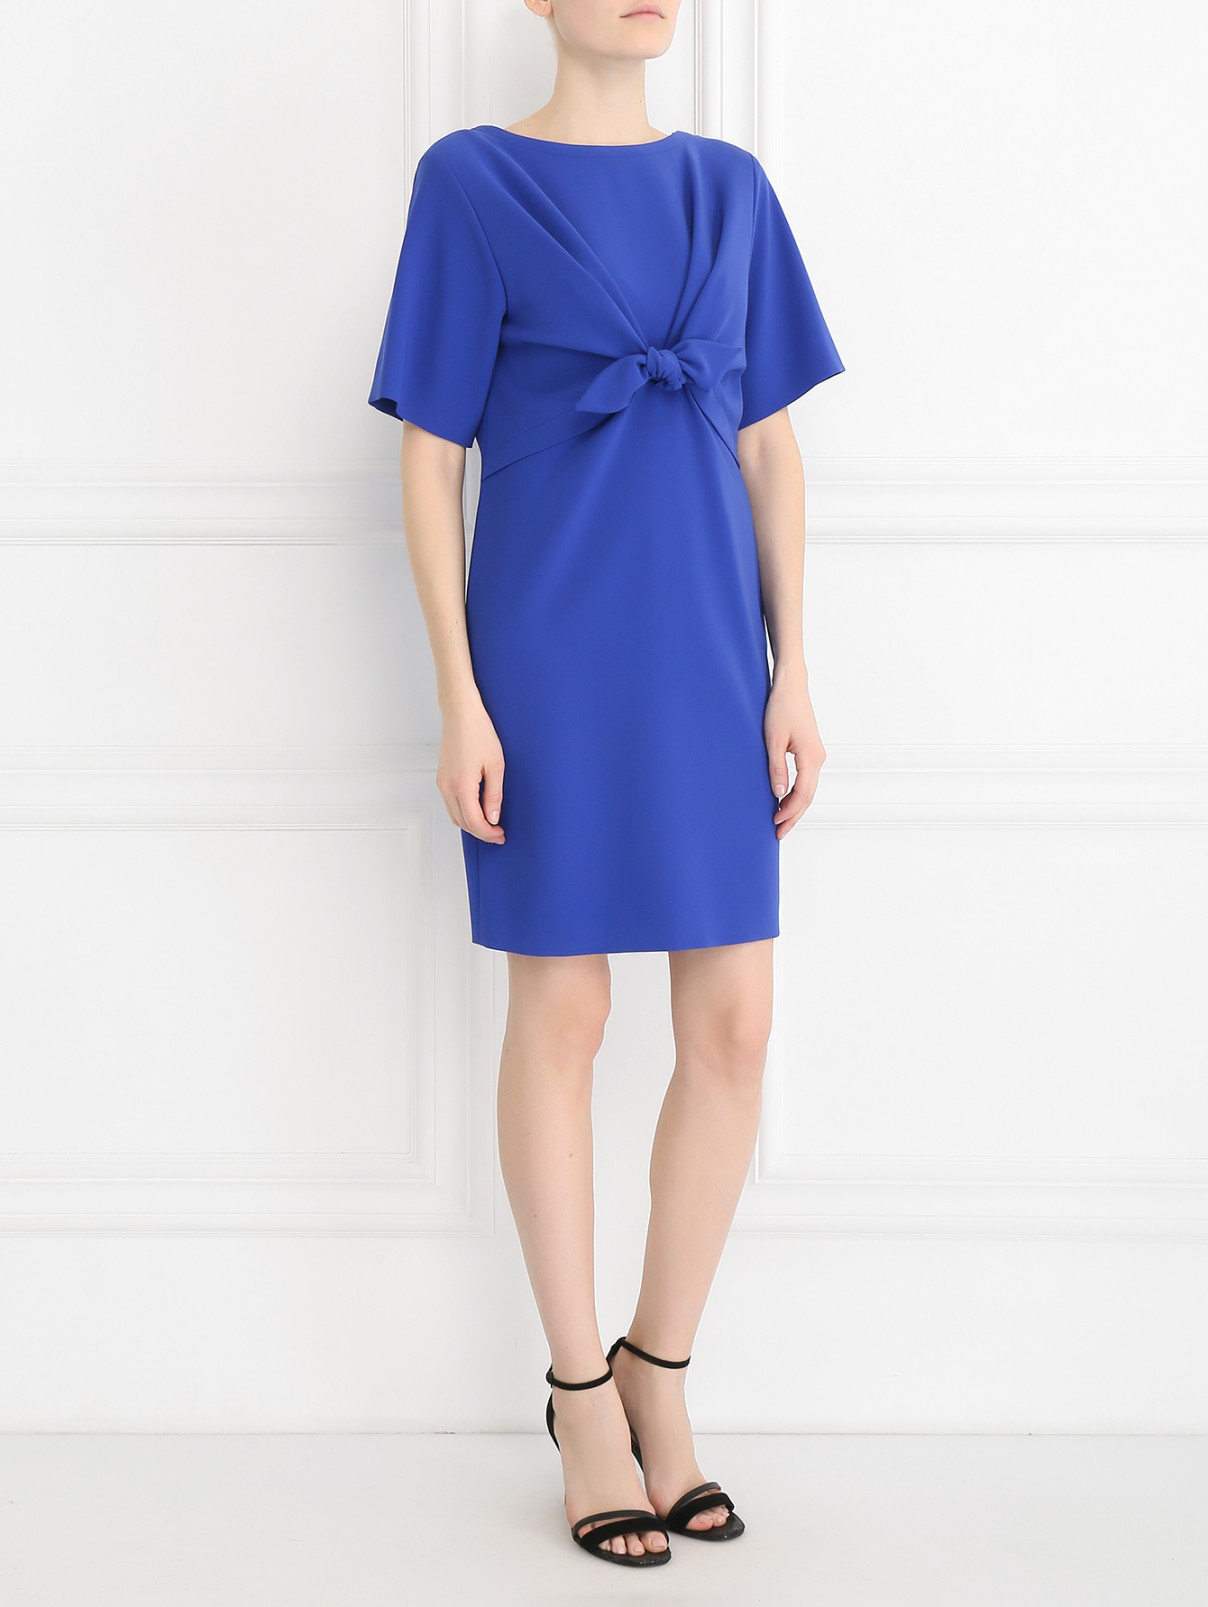 Платье свободного кроя, с декоративным бантом Moschino Couture  –  Модель Общий вид  – Цвет:  Синий